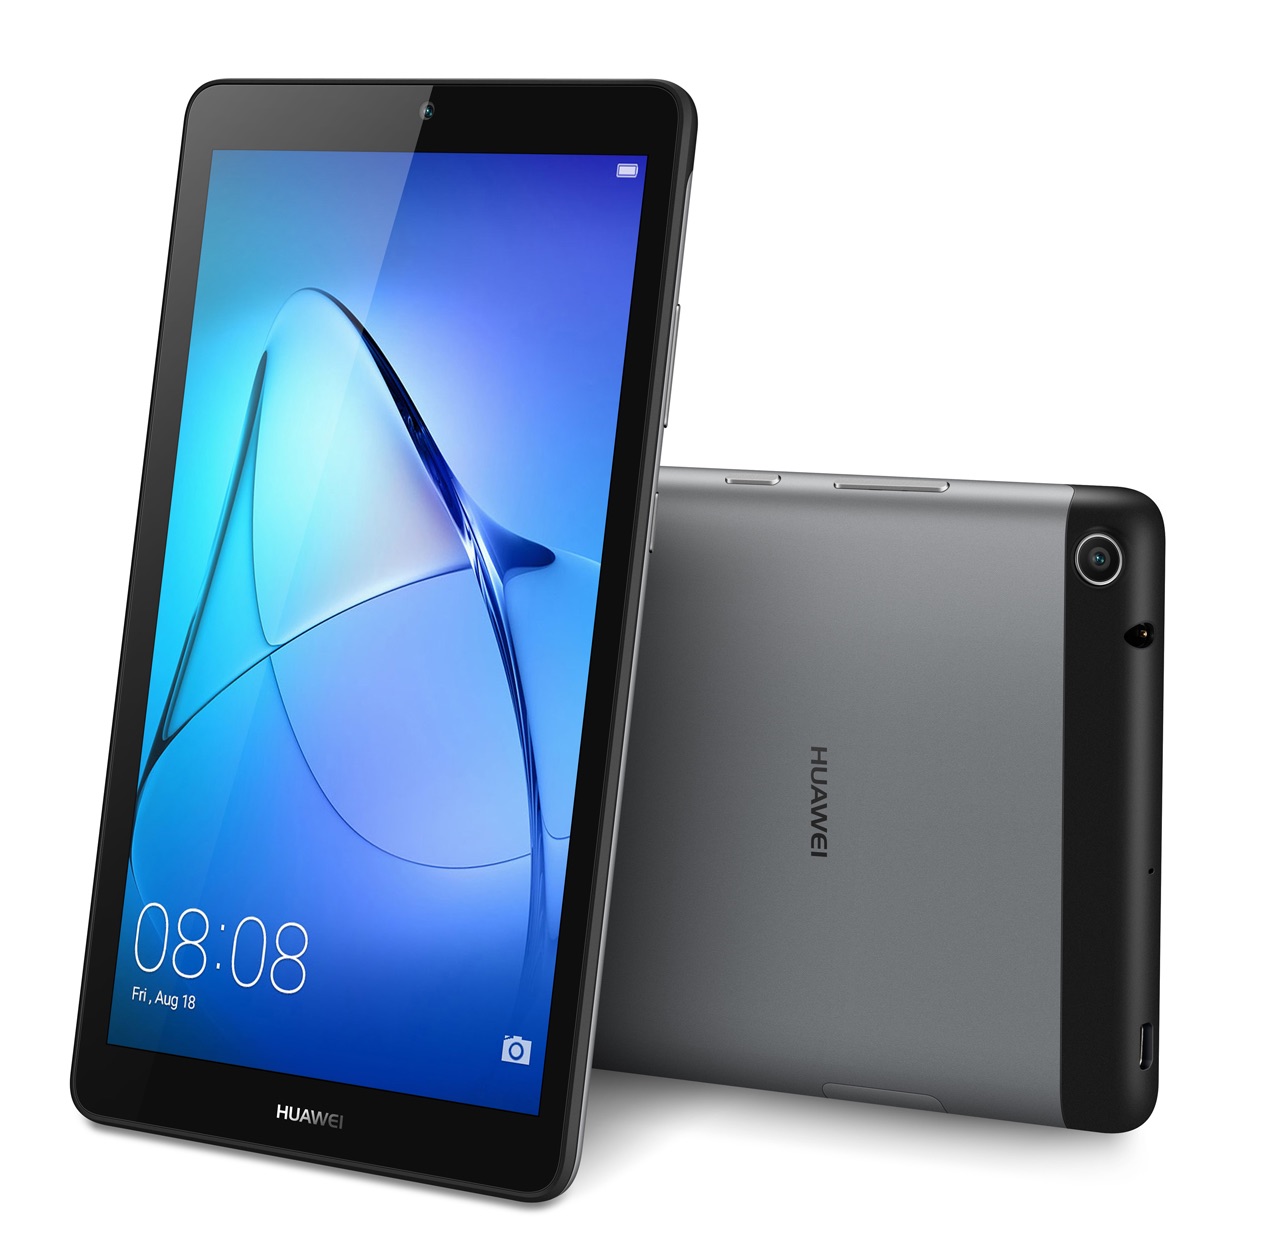 ファーウェイ、約1万円の低価格なAndroidタブレット「HUAWEI MediaPad T3 7」を7月7日に発売！Wi-Fiモデルのみで